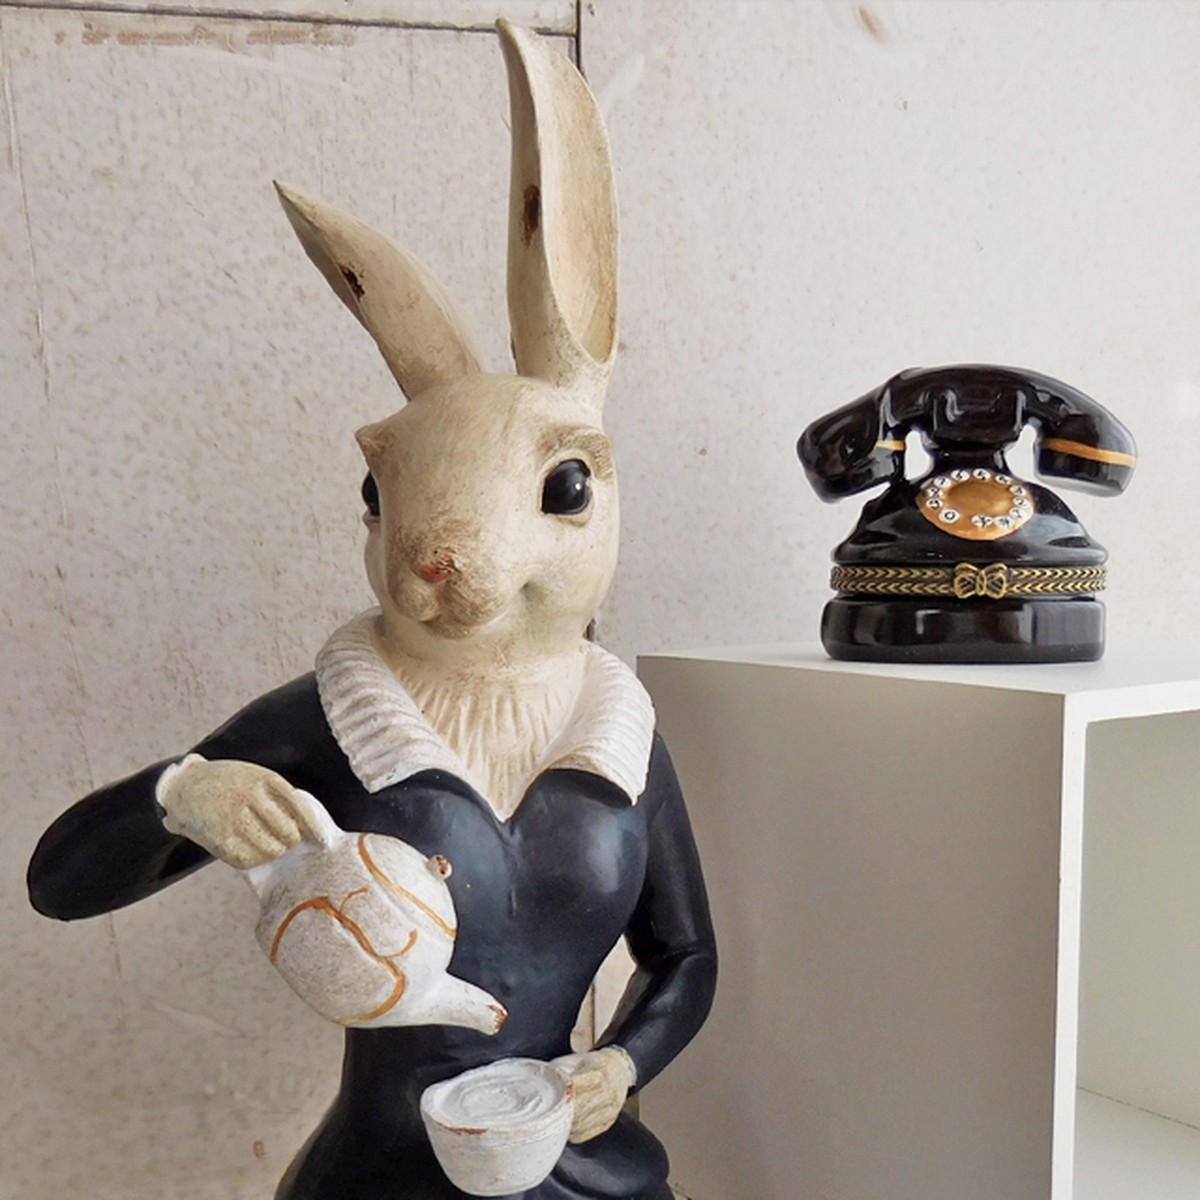 (85) コベントガーデン メイドラビット うさぎの置物 ウサギ オブジェ <em>tinis</em> 猫・うさぎ雑貨のお店